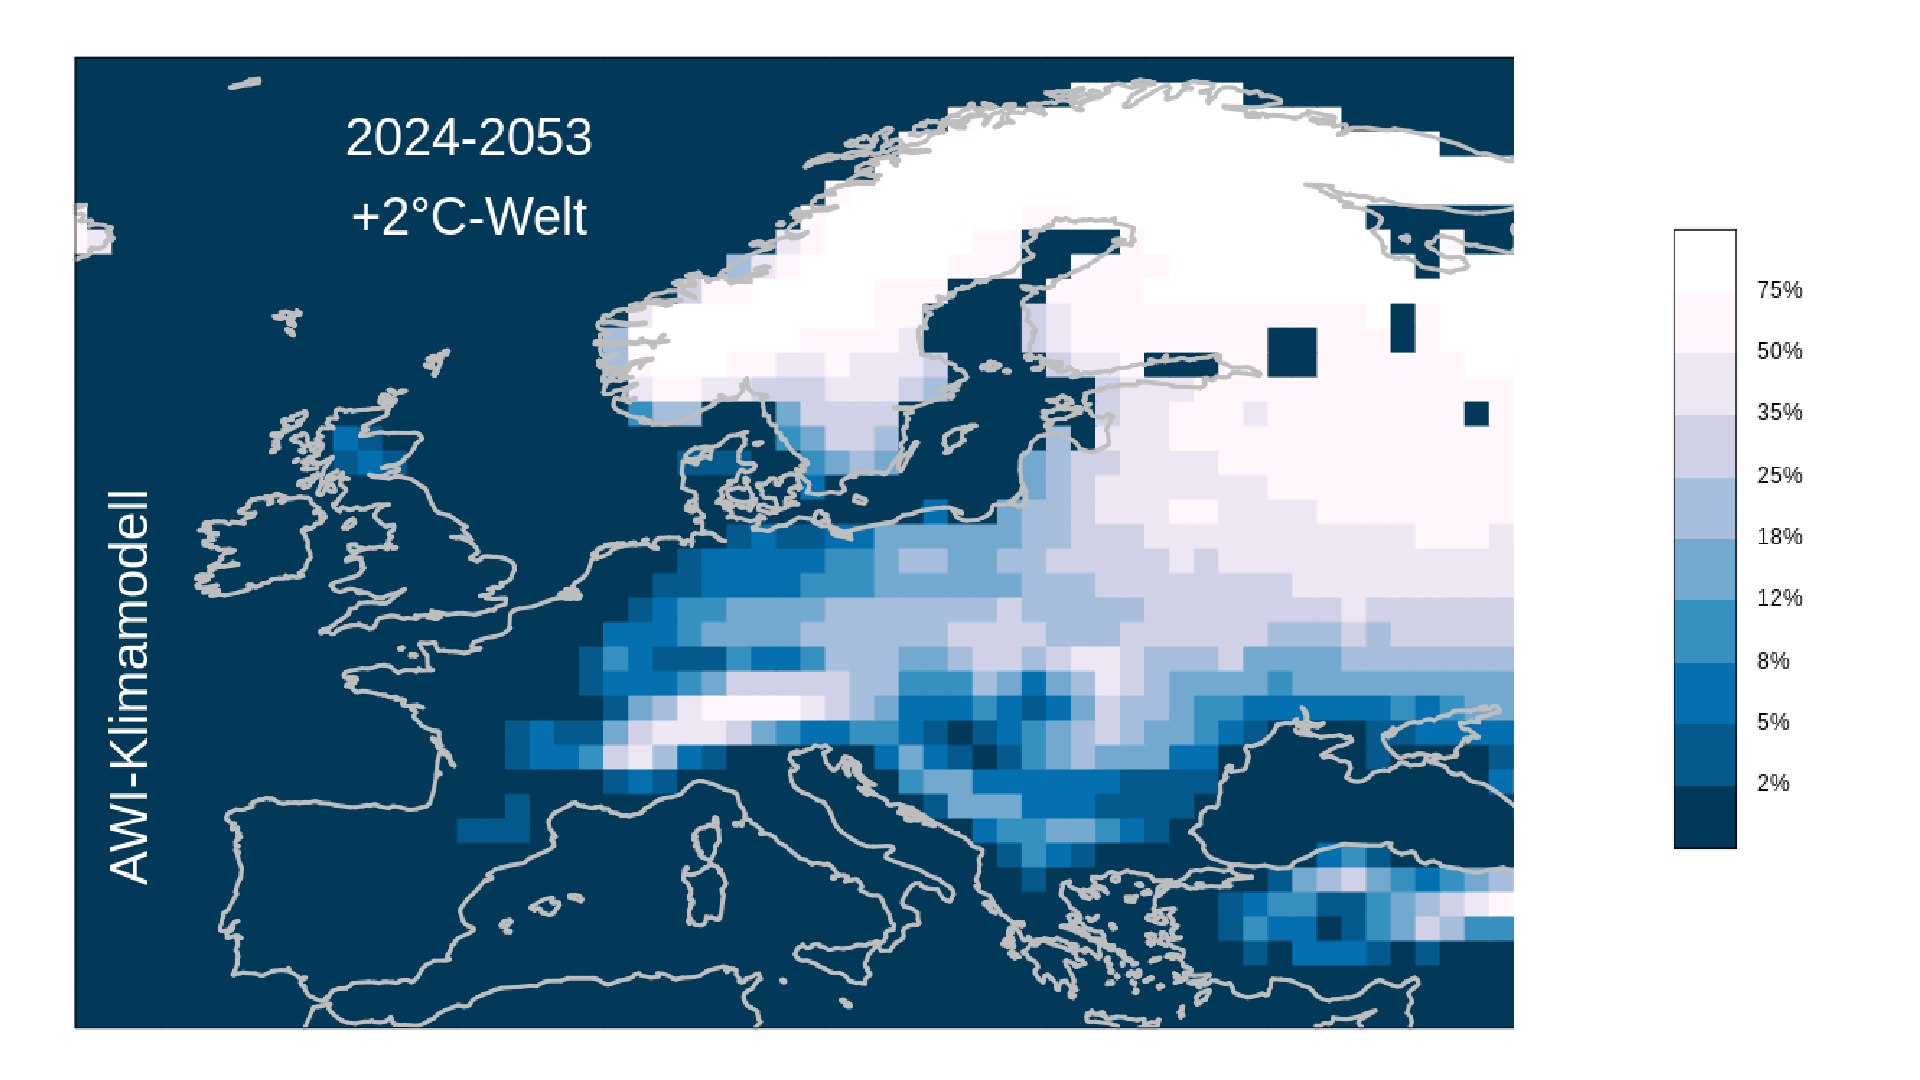 Karte von Europa, die auf einer Farbskala von Weiß bis Blau zeigt, welche Wahrscheinlichkeiten im Modell für Schnee bei der globalen Erwärmung von 2 Grad bestehen